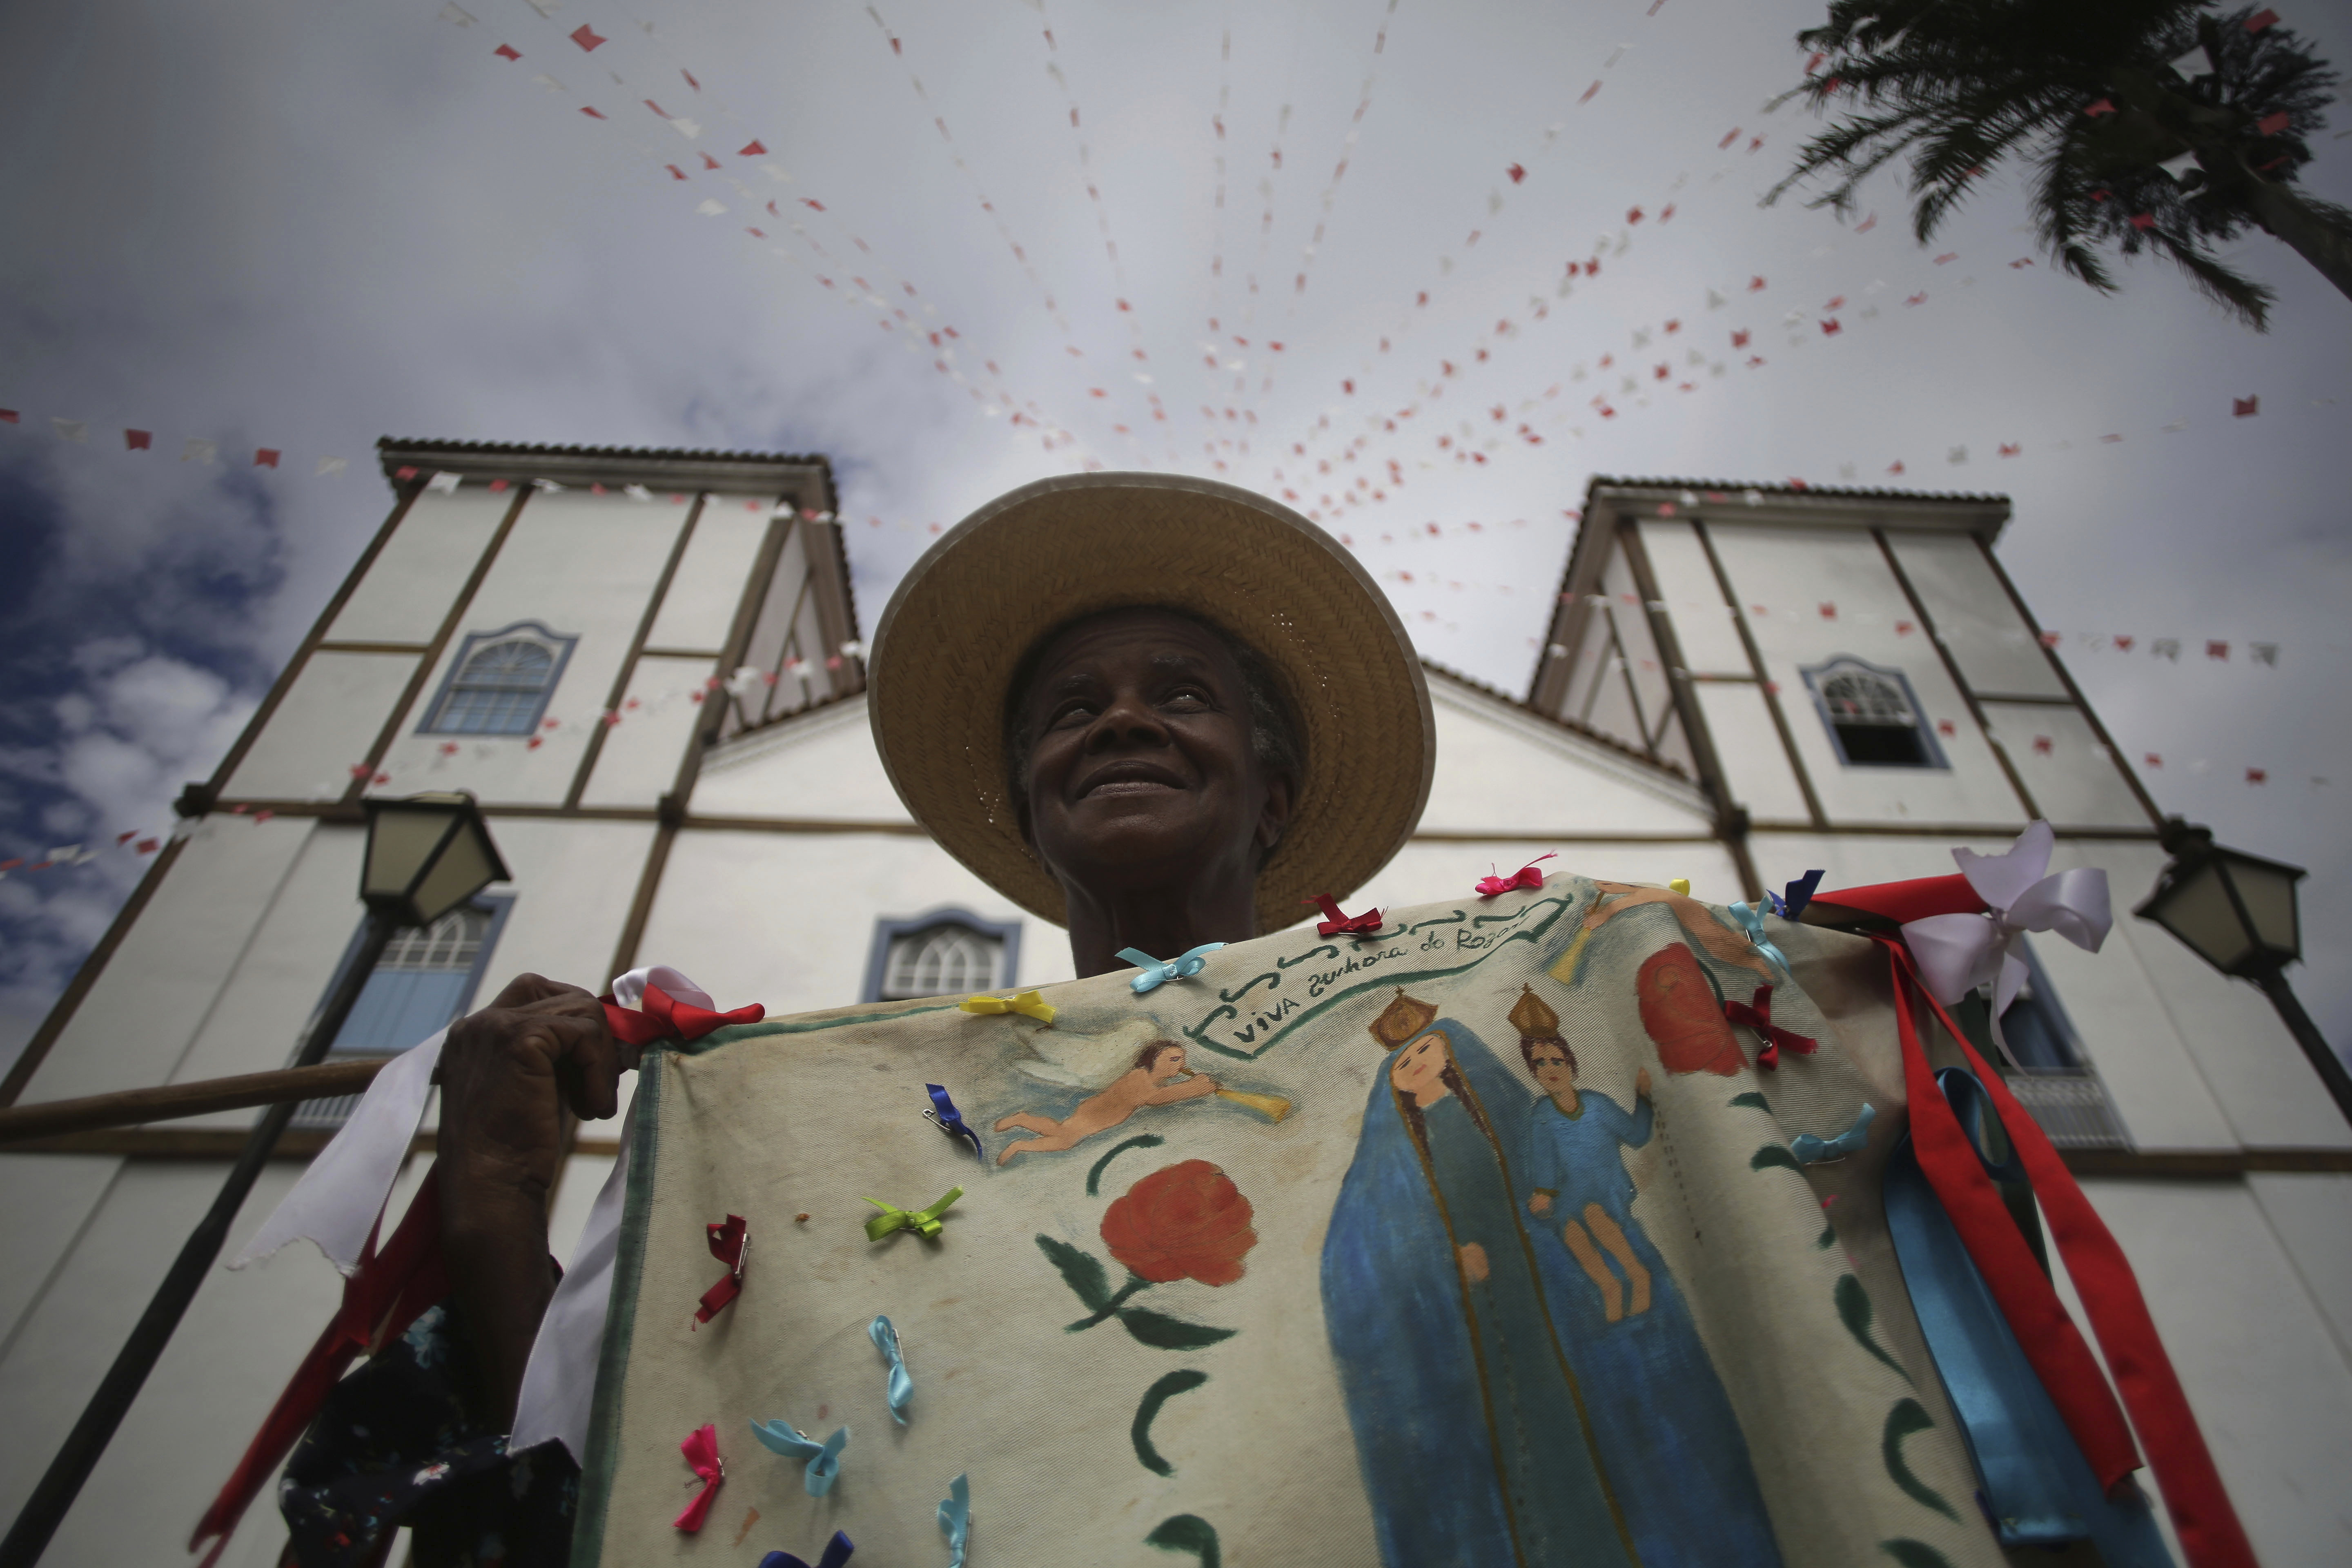 Festival Cavalhados in Brasile